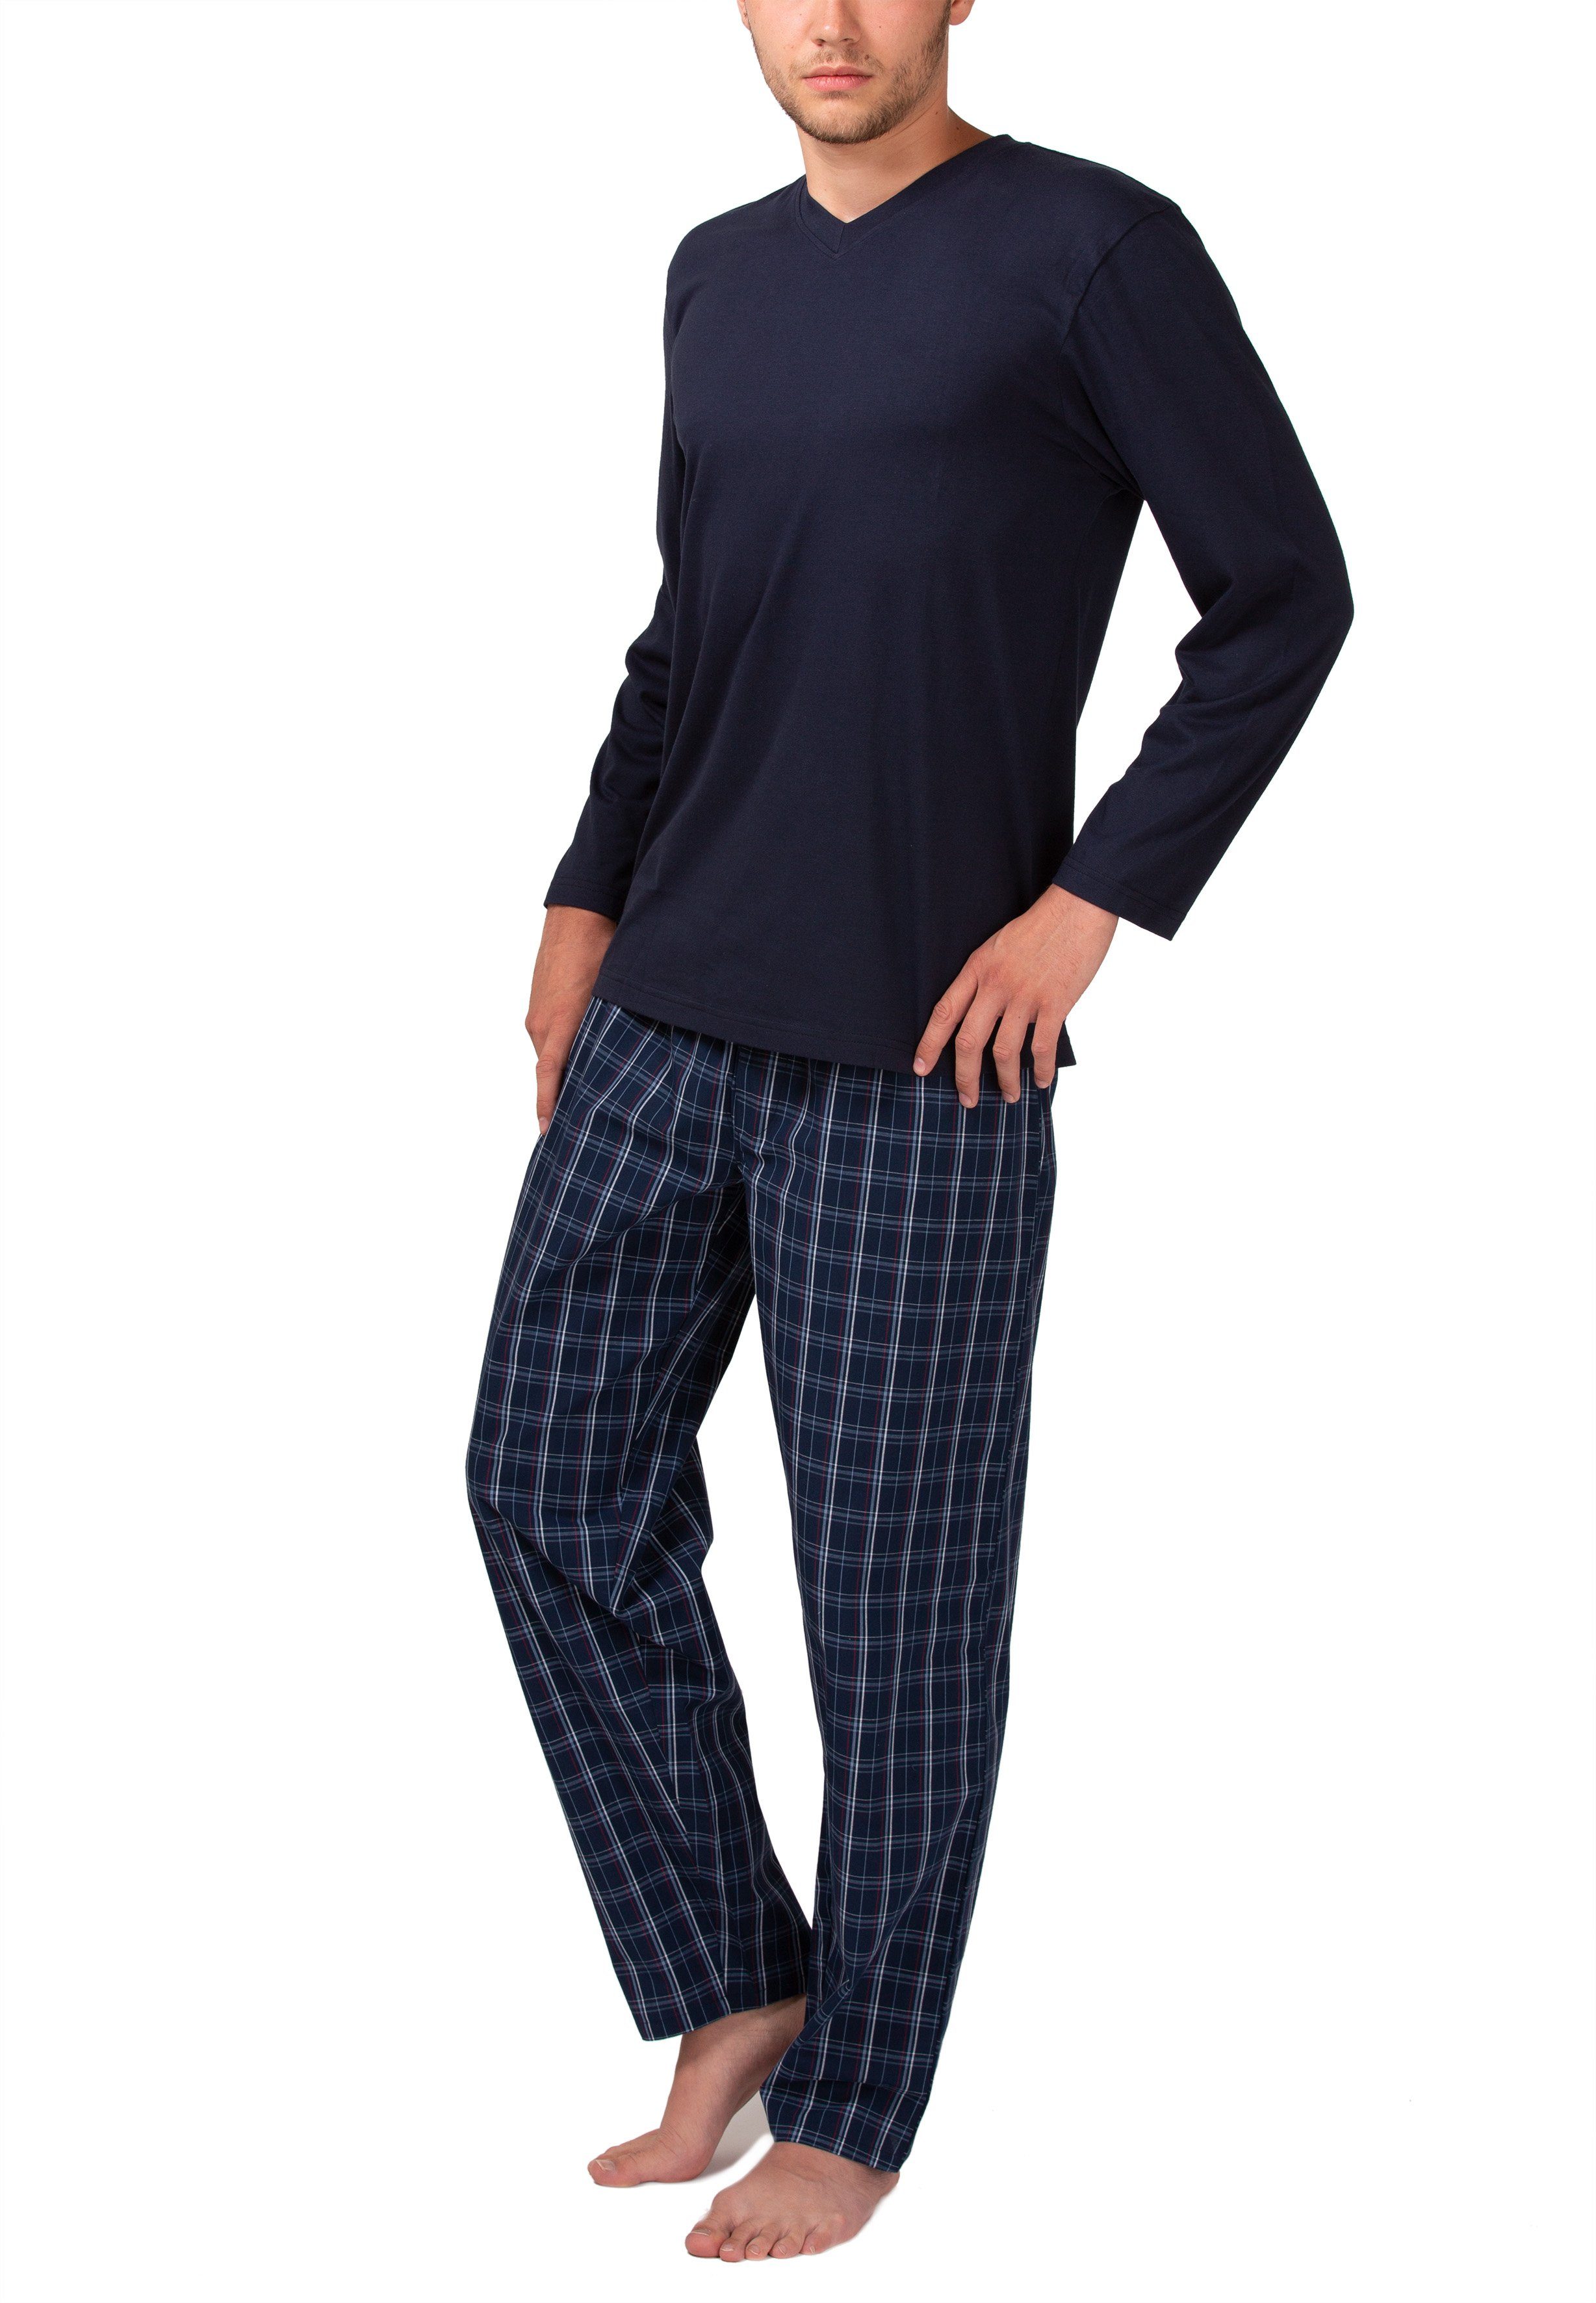 mit navy Moonline Herren Schlafanzug Baumwolle Pyjama Webhose aus 100%